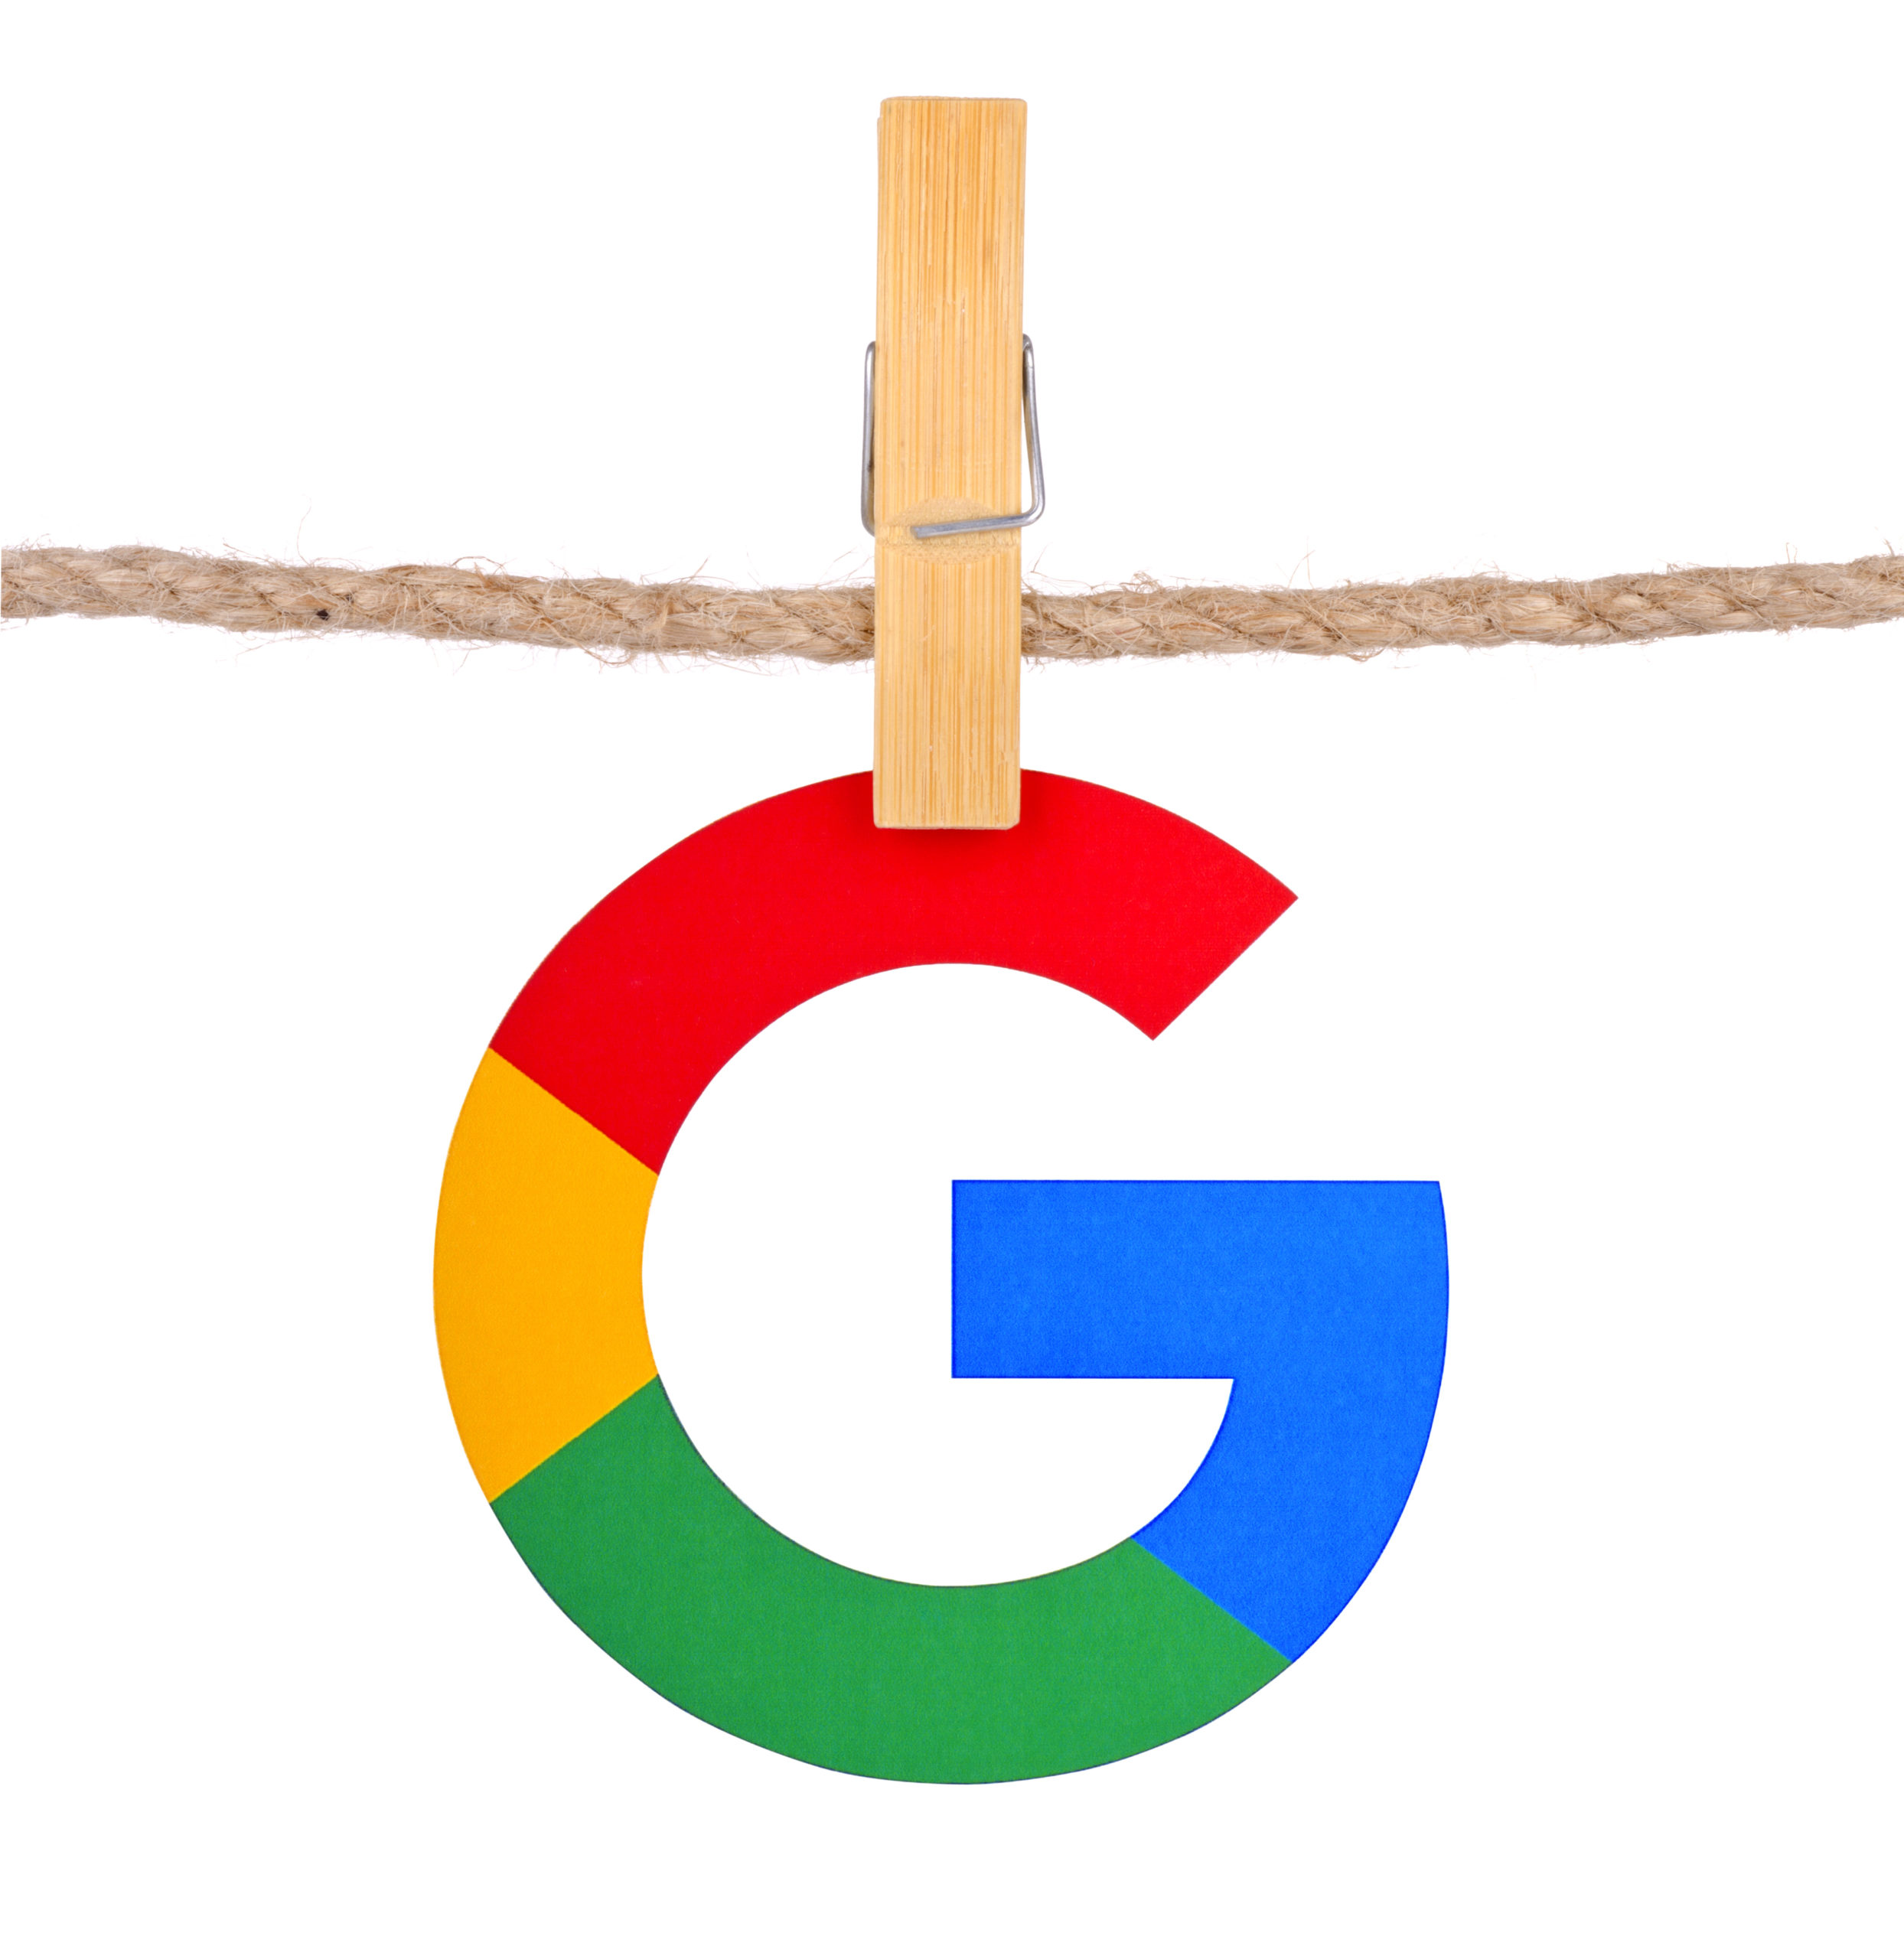 Rusko znovu pokutovalo americkou firmu Google za zakázaný obsah